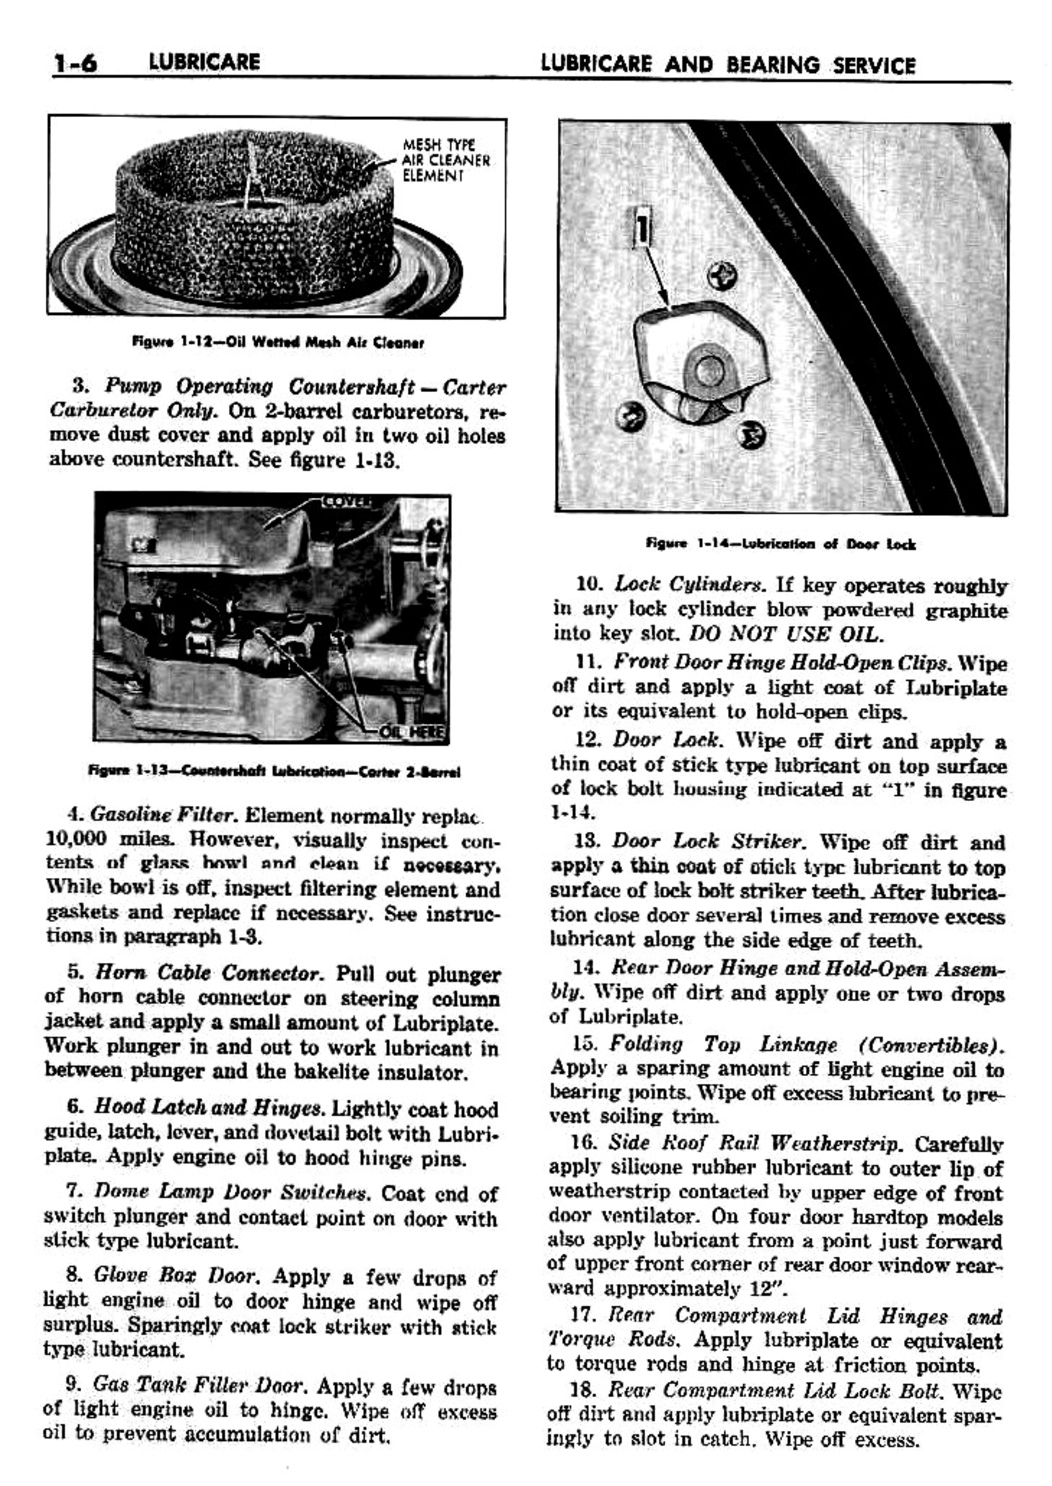 n_02 1959 Buick Shop Manual - Lubricare-006-006.jpg